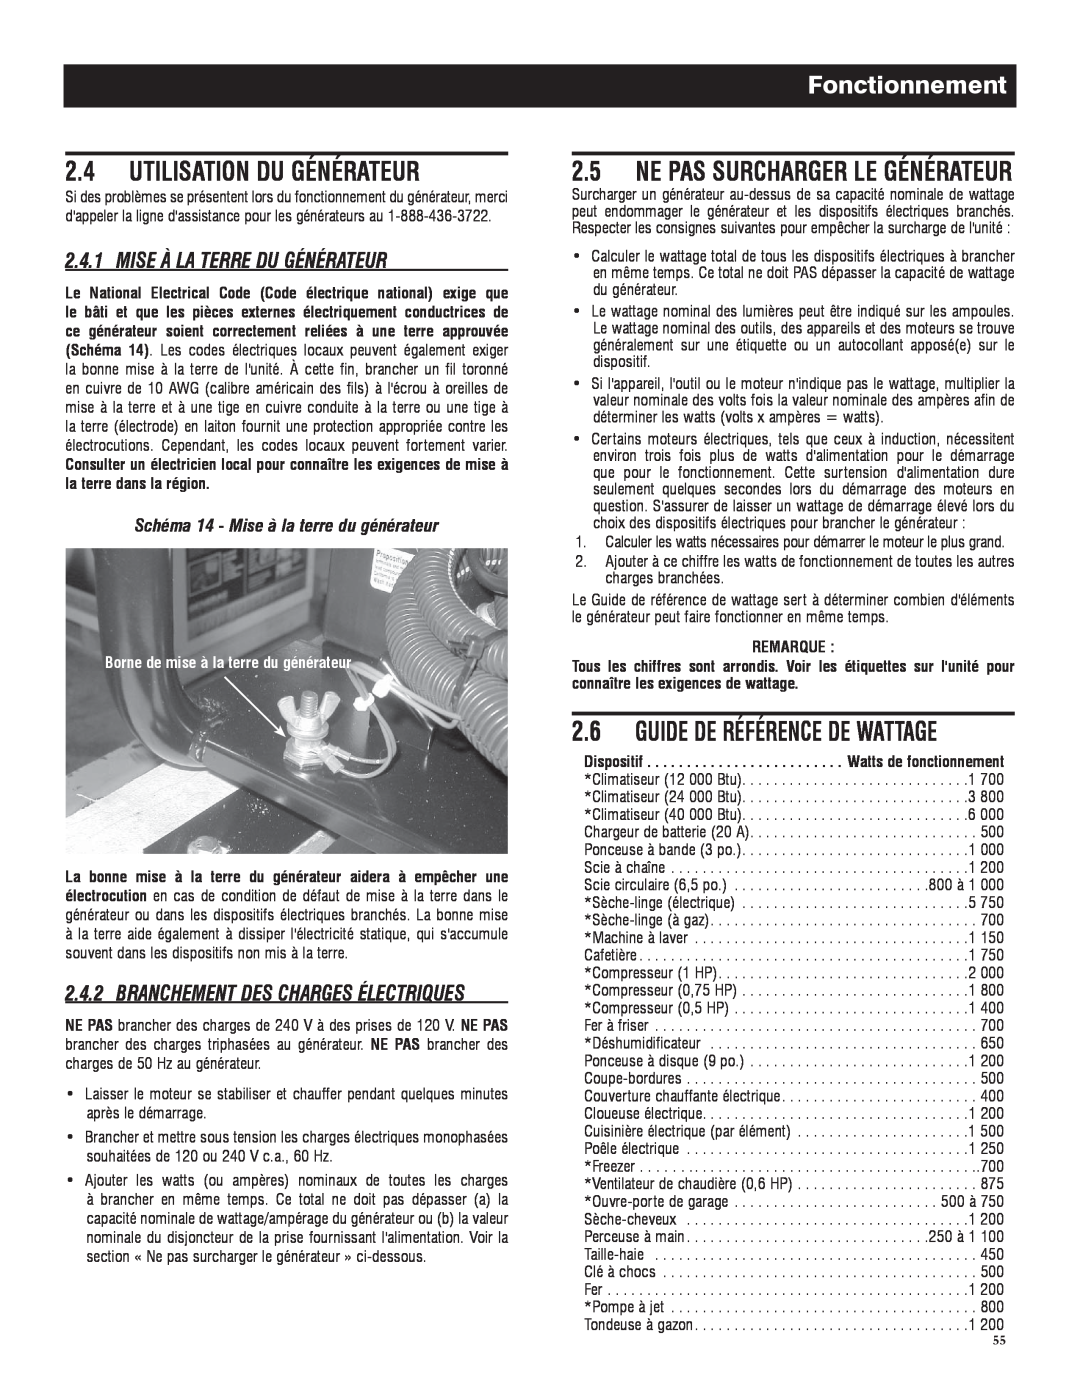 Generac 005735-0 Utilisation Du Générateur, Guide De Référence De Wattage, Ne Pas Surcharger Le Générateur, Fonctionnement 